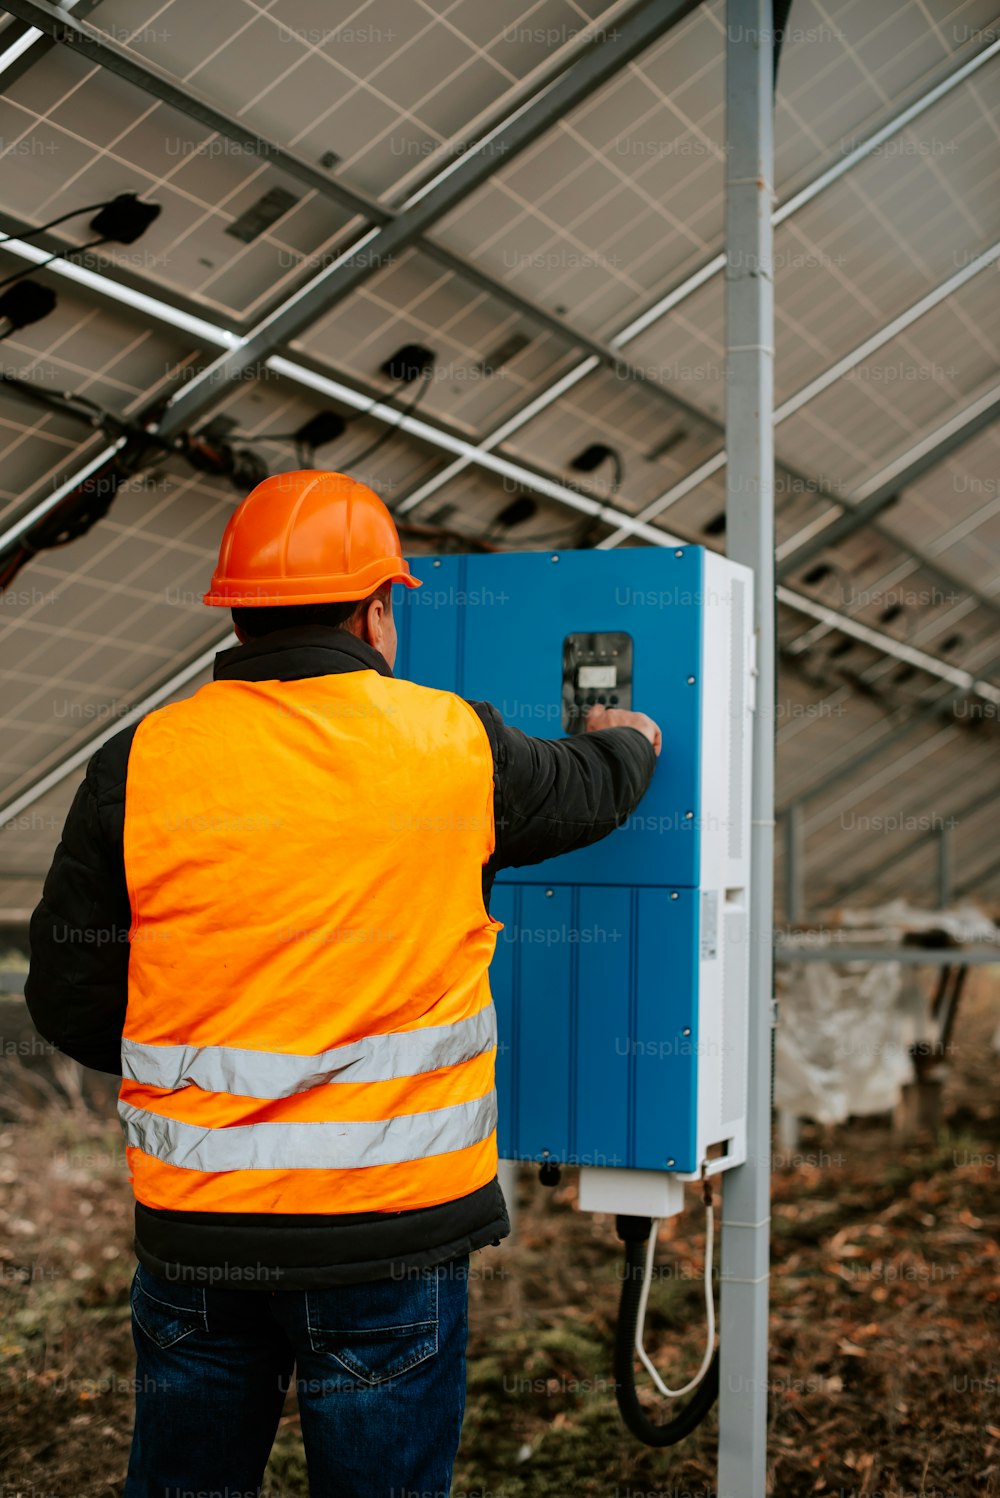 Un uomo con un giubbotto di sicurezza arancione sta riparando un pannello solare